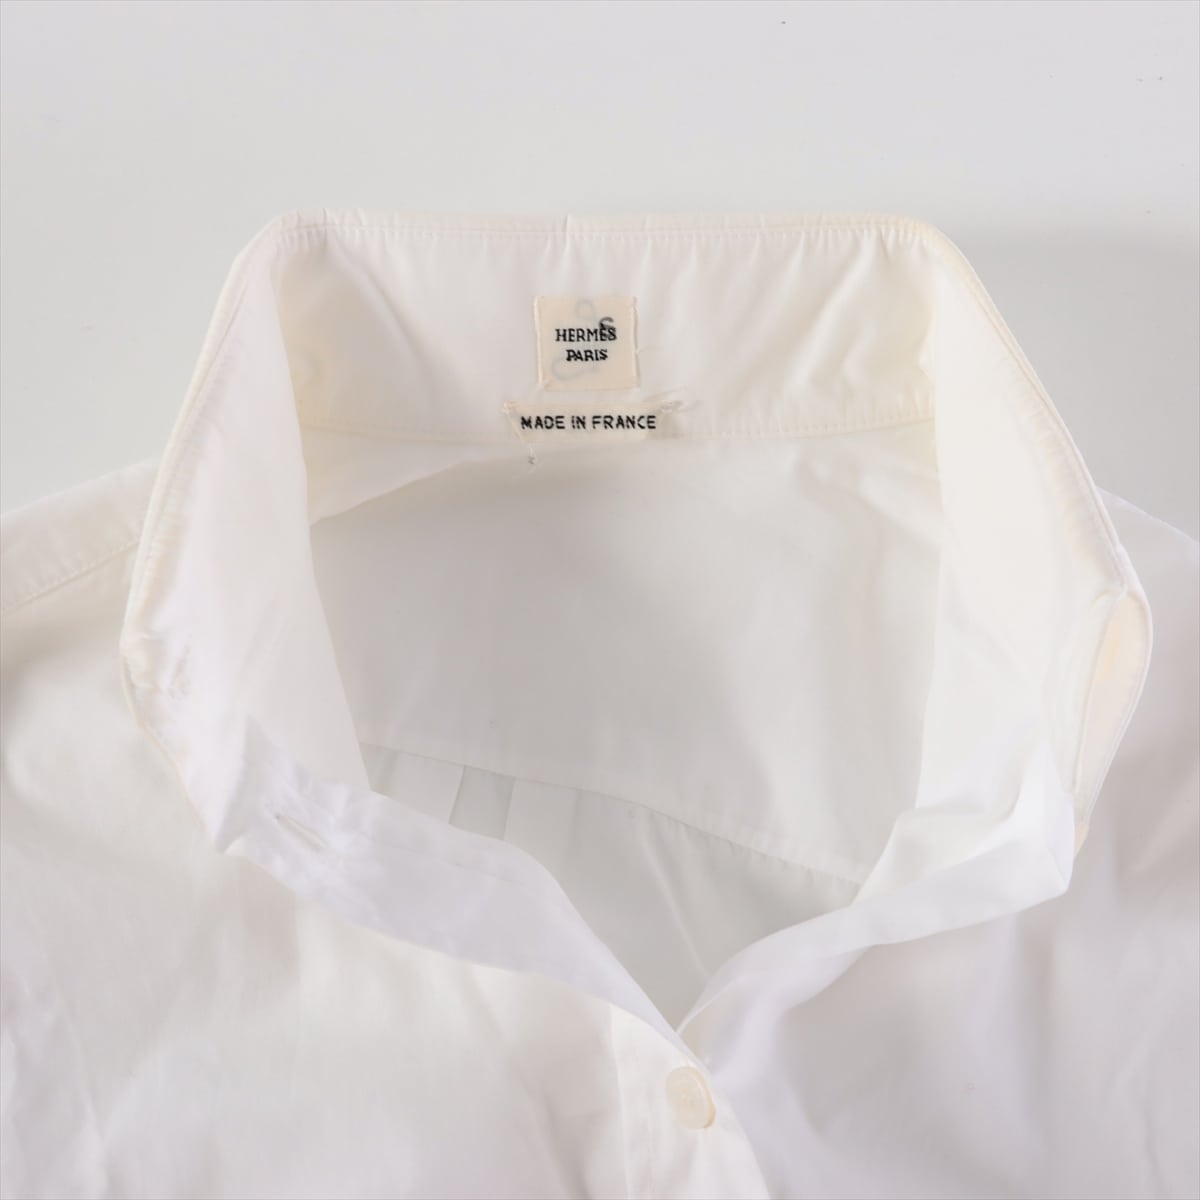 Hermès Cotton Shirt dress 36 Ladies' White